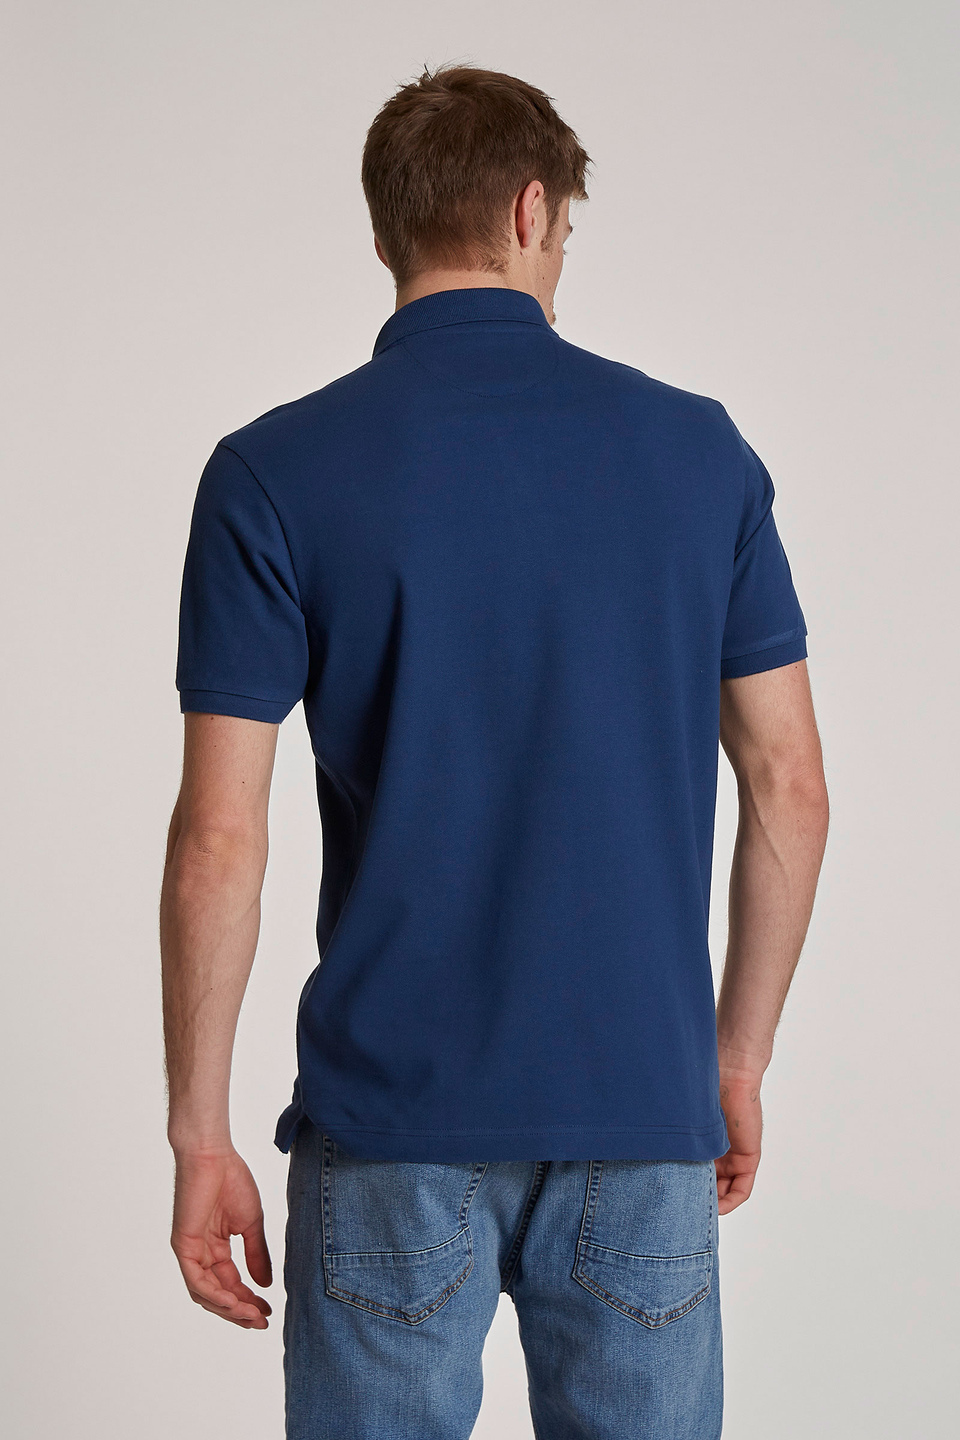 Herren-Poloshirt mit kurzen Ärmeln im regular fit - La Martina - Official Online Shop